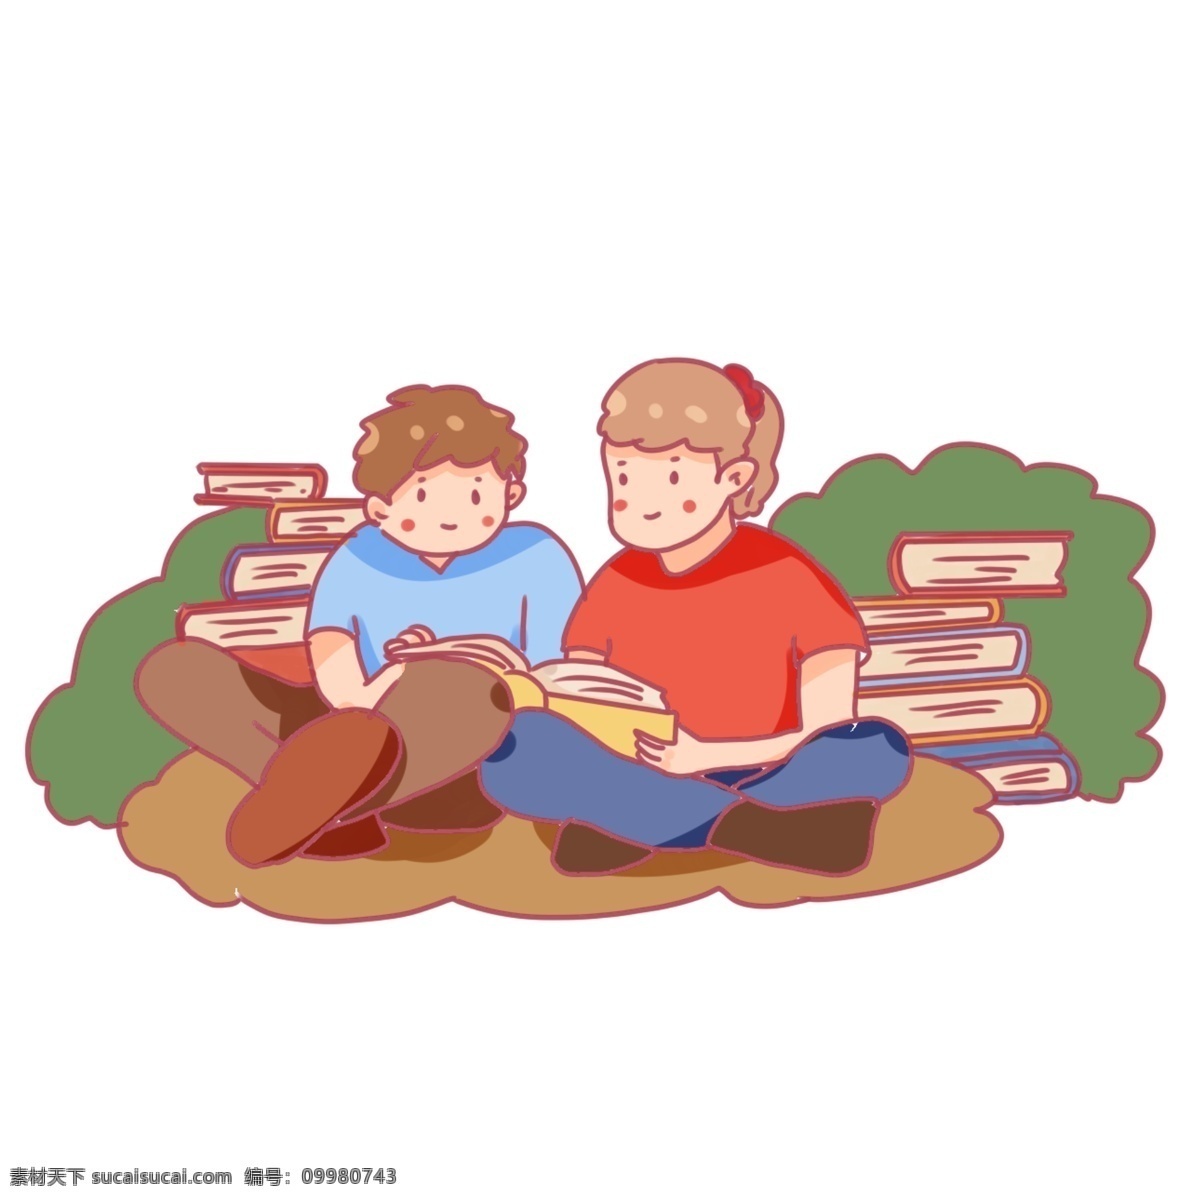 世界 读书 日 同学 分享 世界读书日 学生 看书 学习 书本 知识 读书分享 卡通 q版 书架 阅读 分享会